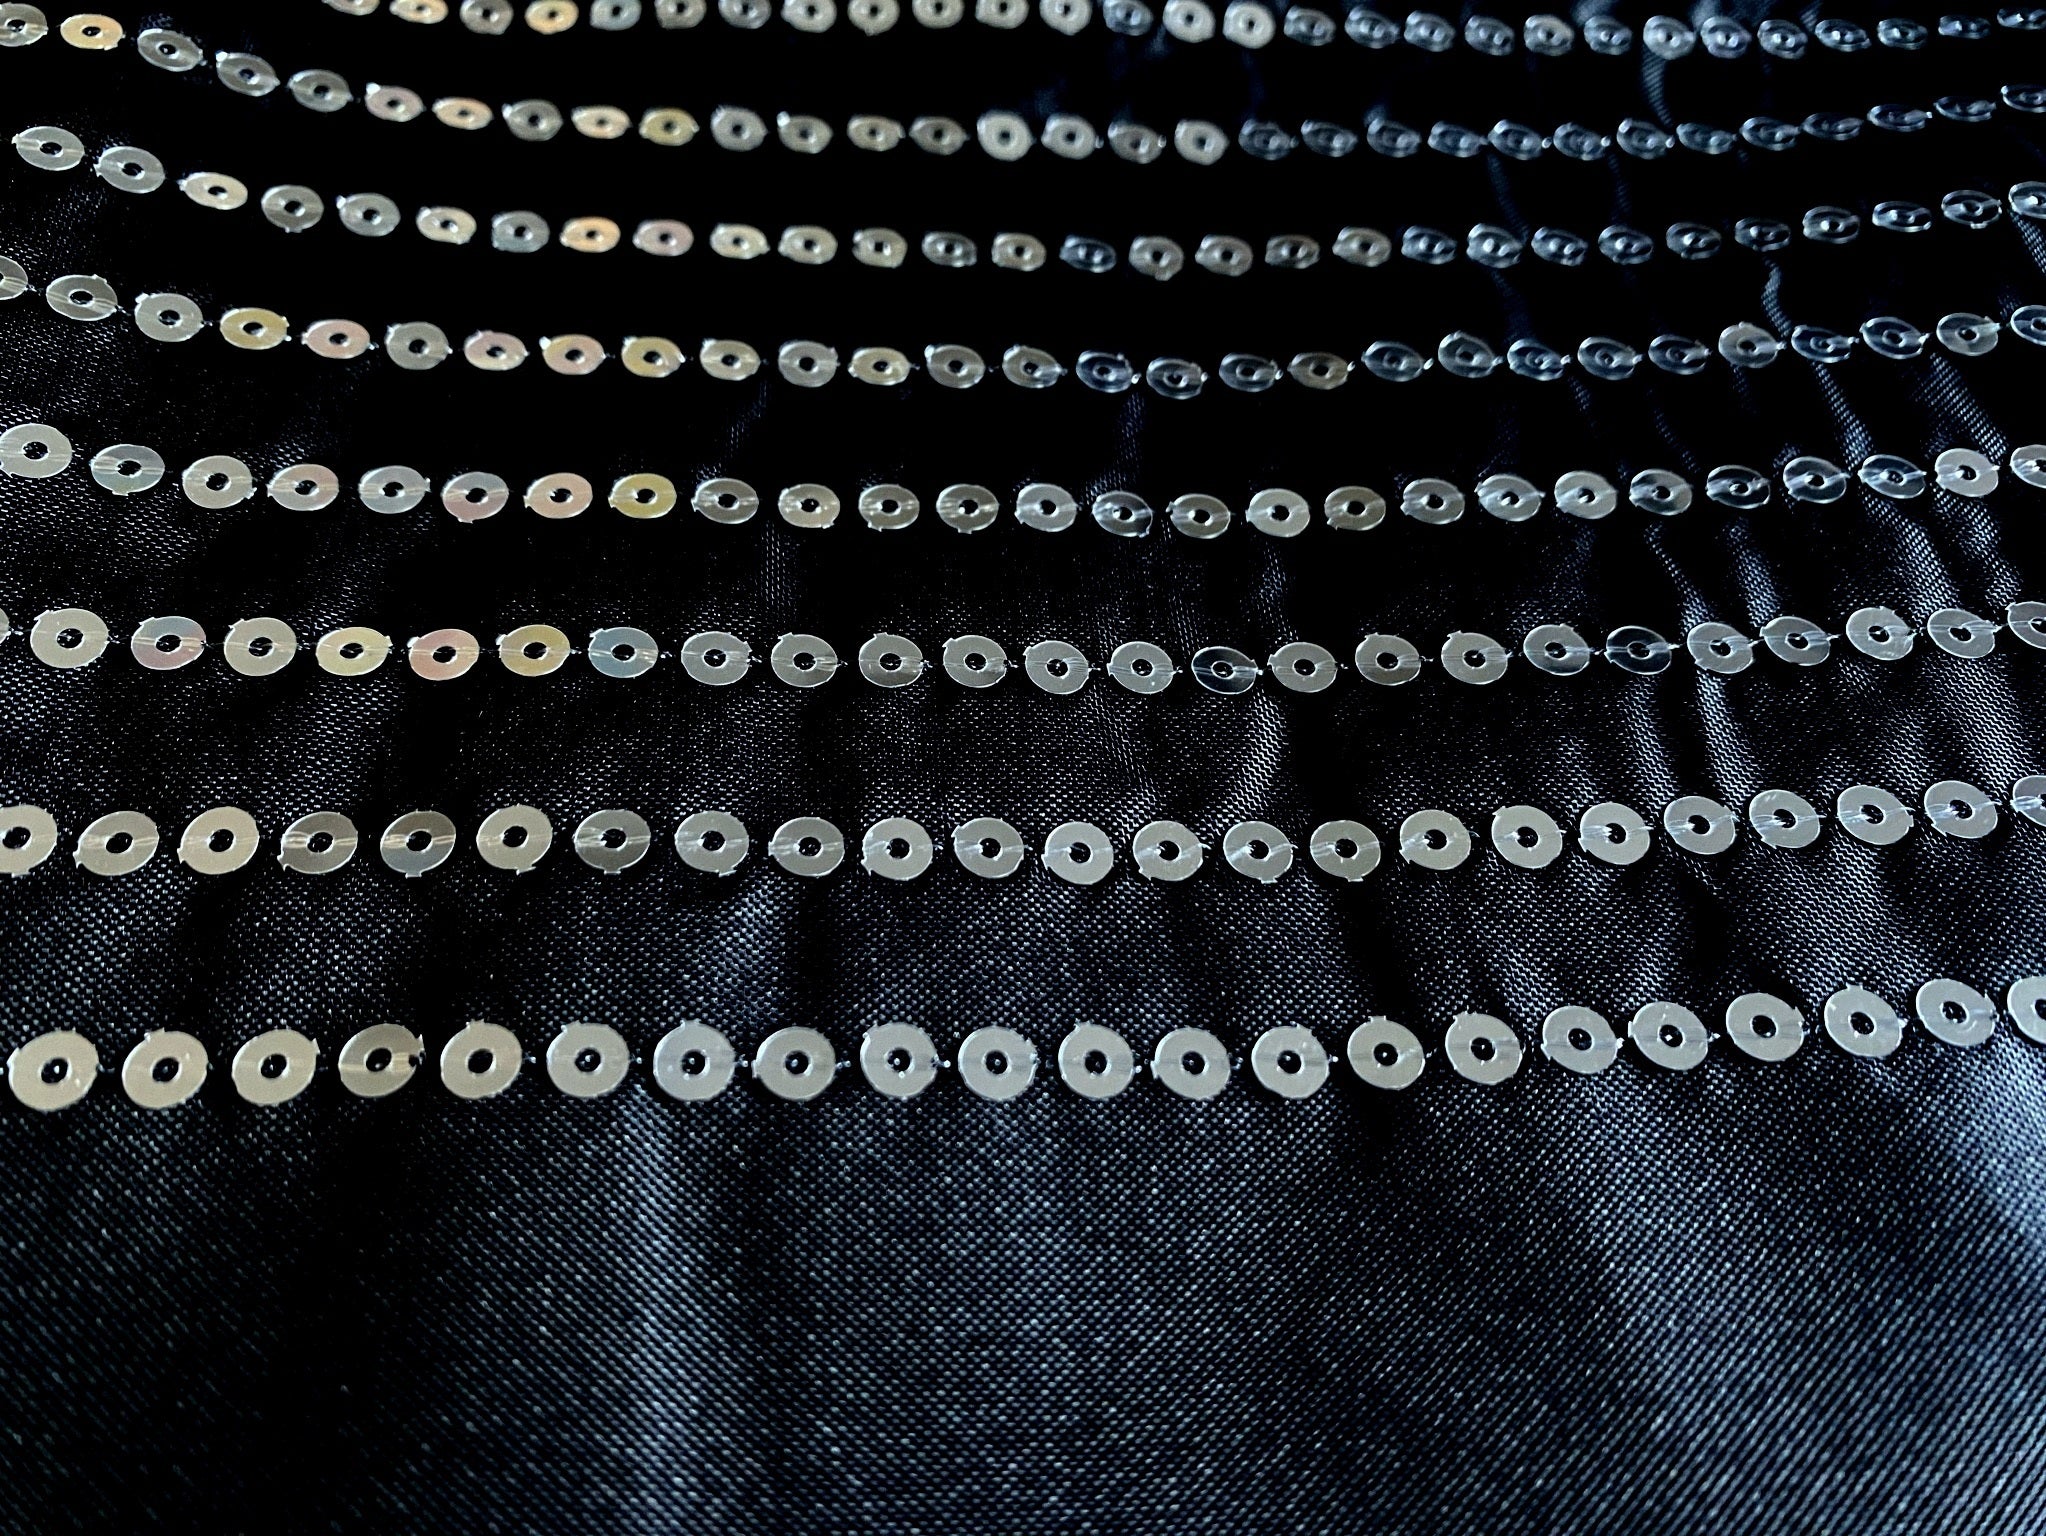 Textil-Duschvorhang Linie schwarz silber BxH 180x200cm